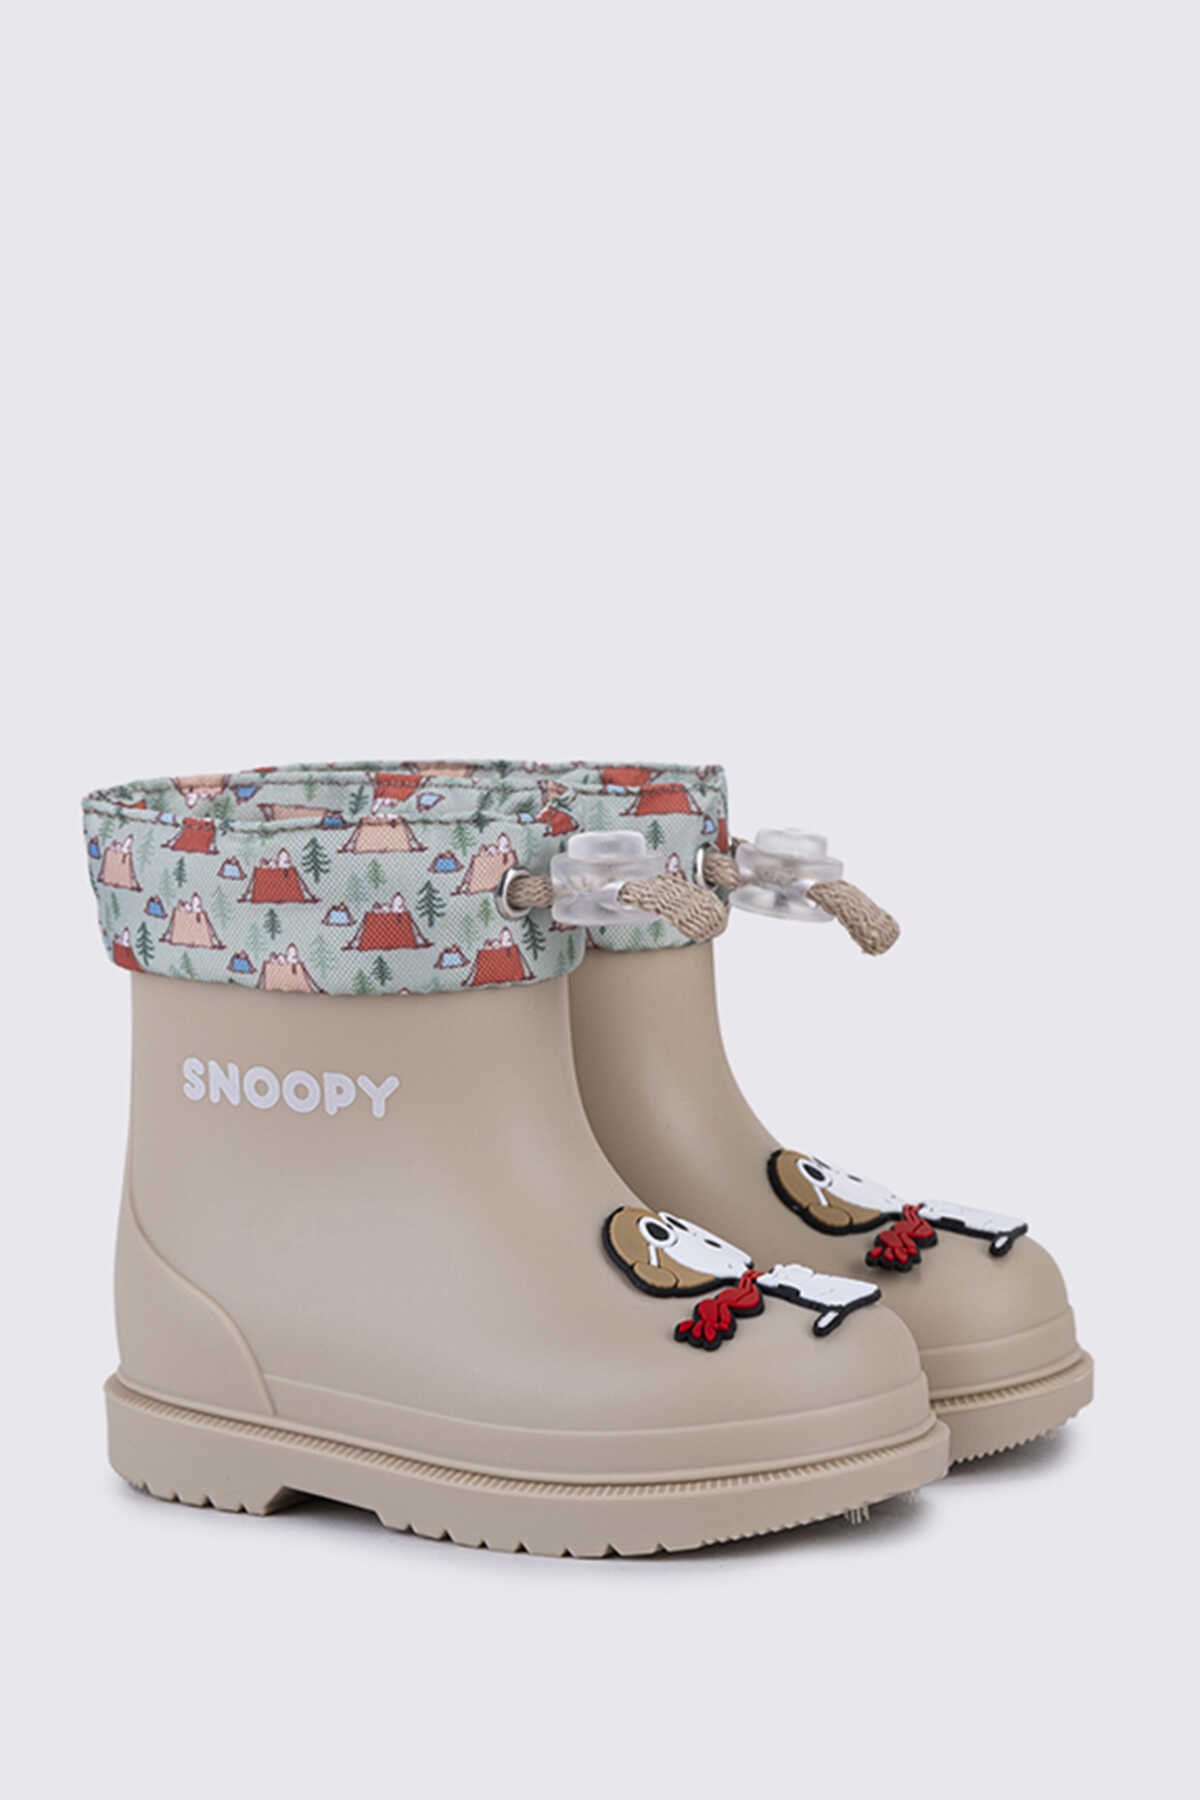 Igor - Igor BIMBI SNOOPY Yağmur Çizmesi Unisex Çocuk Ayakkabı Bej